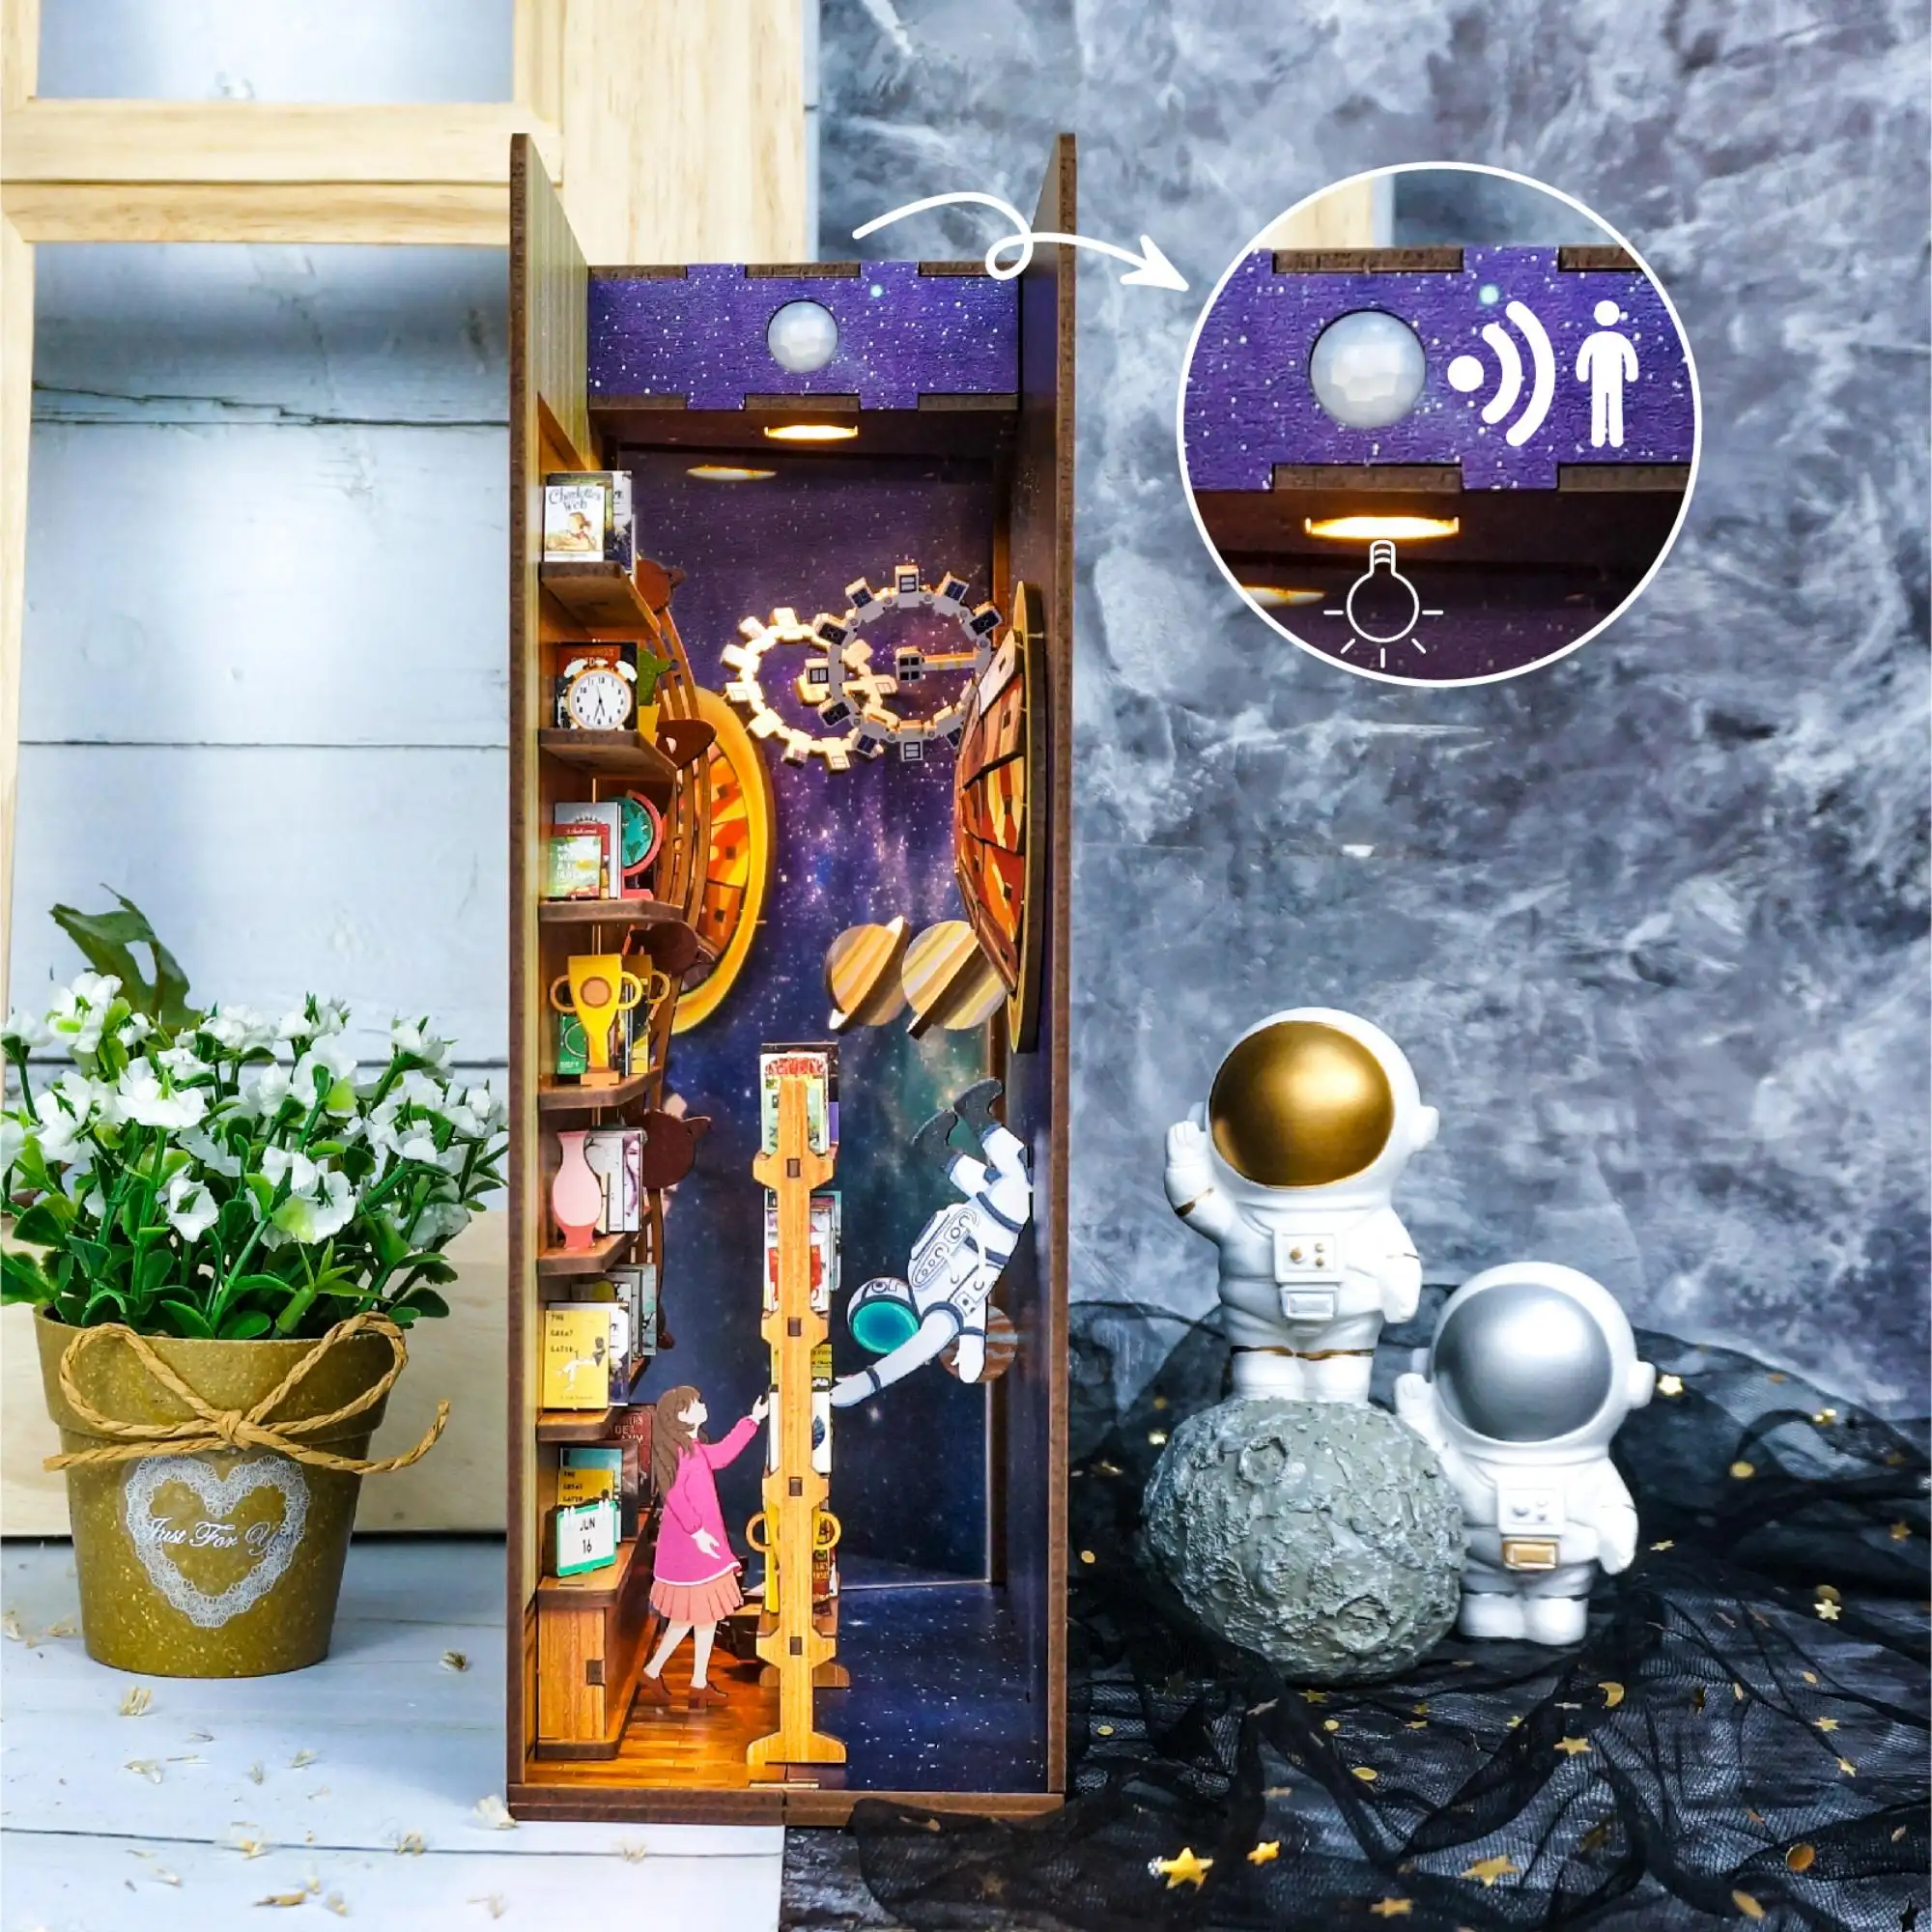 Tonecheer Interstellaire Miniatuur Poppen Huis Kit Met Meubels En Led Licht 3d Puzzel Boek Hoekje